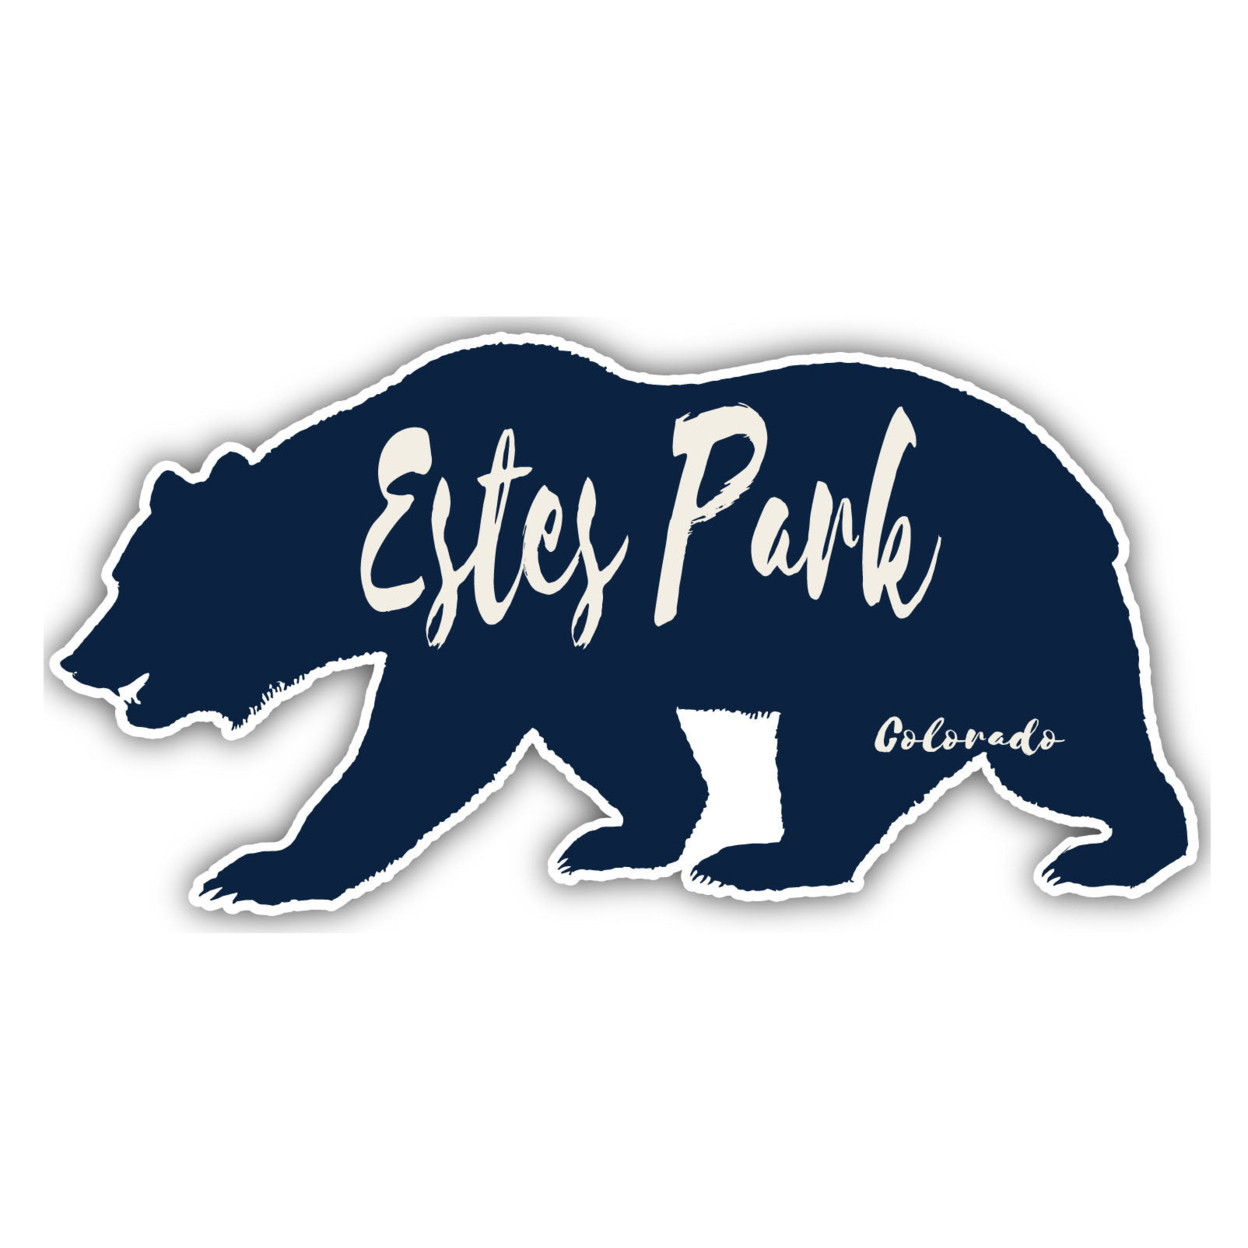 Estes Park Colorado Souvenir Decorative Stickers (Choose Theme And Size) - 4-Pack, 10-Inch, Bear